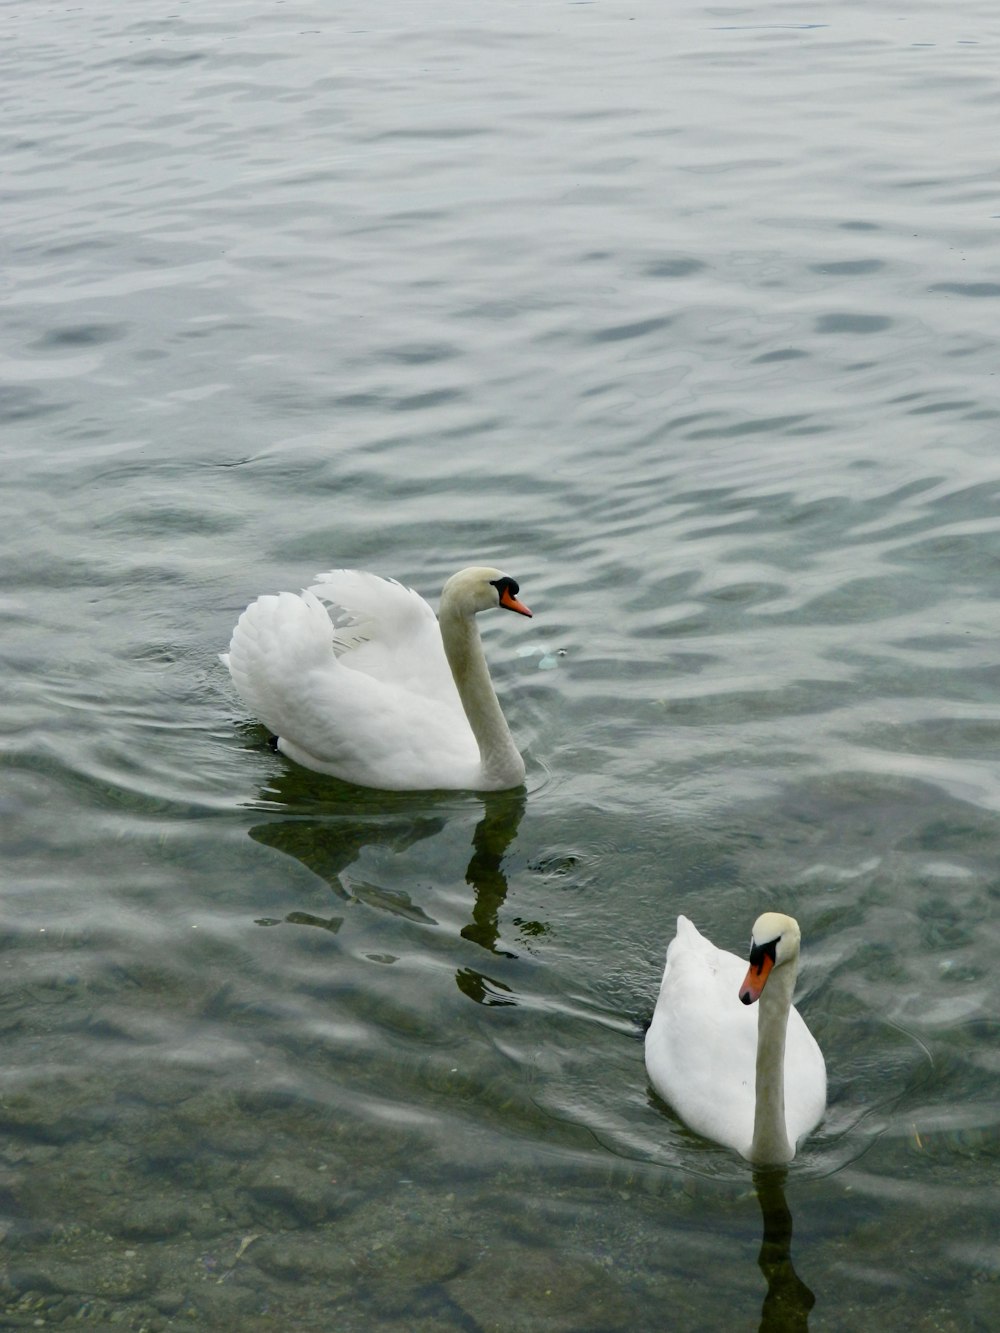 Dos cisnes blancos nadando en un cuerpo de agua